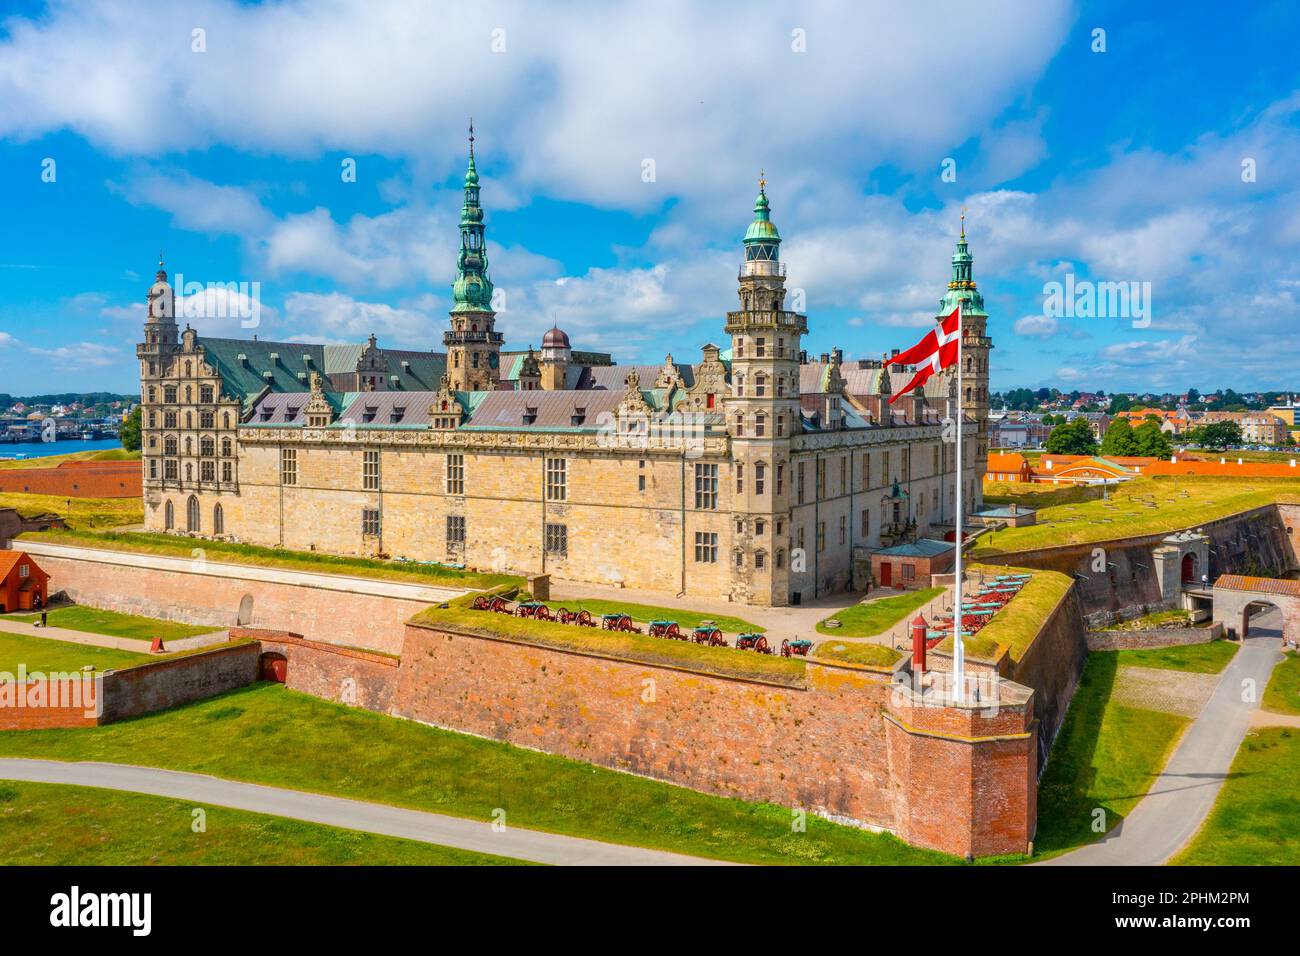 Panorama of the Kronborg castle at Helsingor, Denmark. Stock Photo